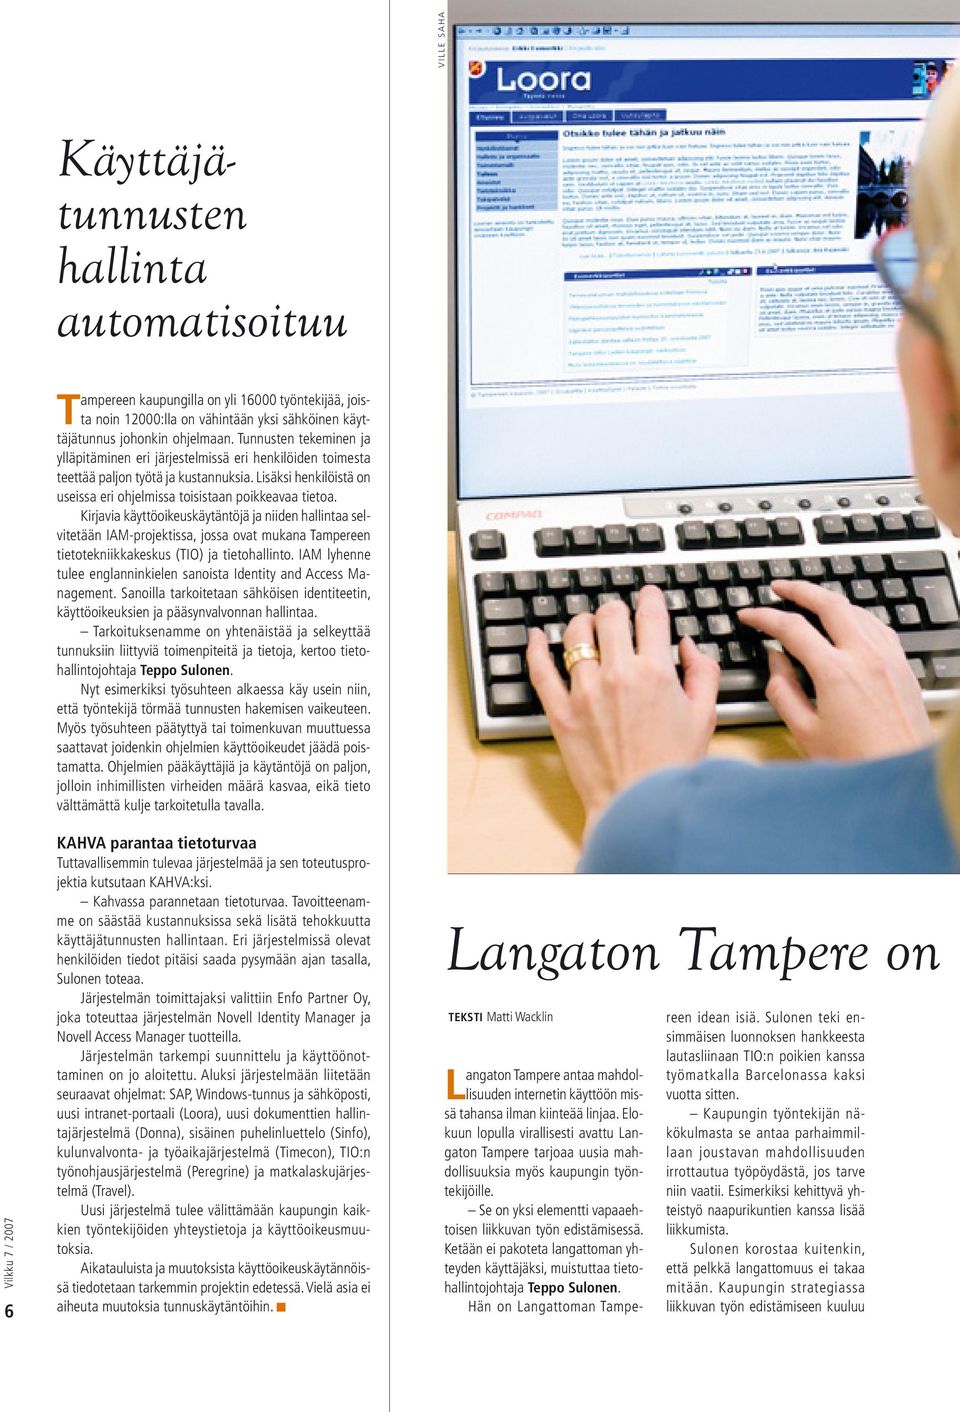 Kirjavia käyttöoikeuskäytäntöjä ja niiden hallintaa selvitetään IAM-projektissa, jossa ovat mukana Tampereen tietotekniikkakeskus (TIO) ja tietohallinto.